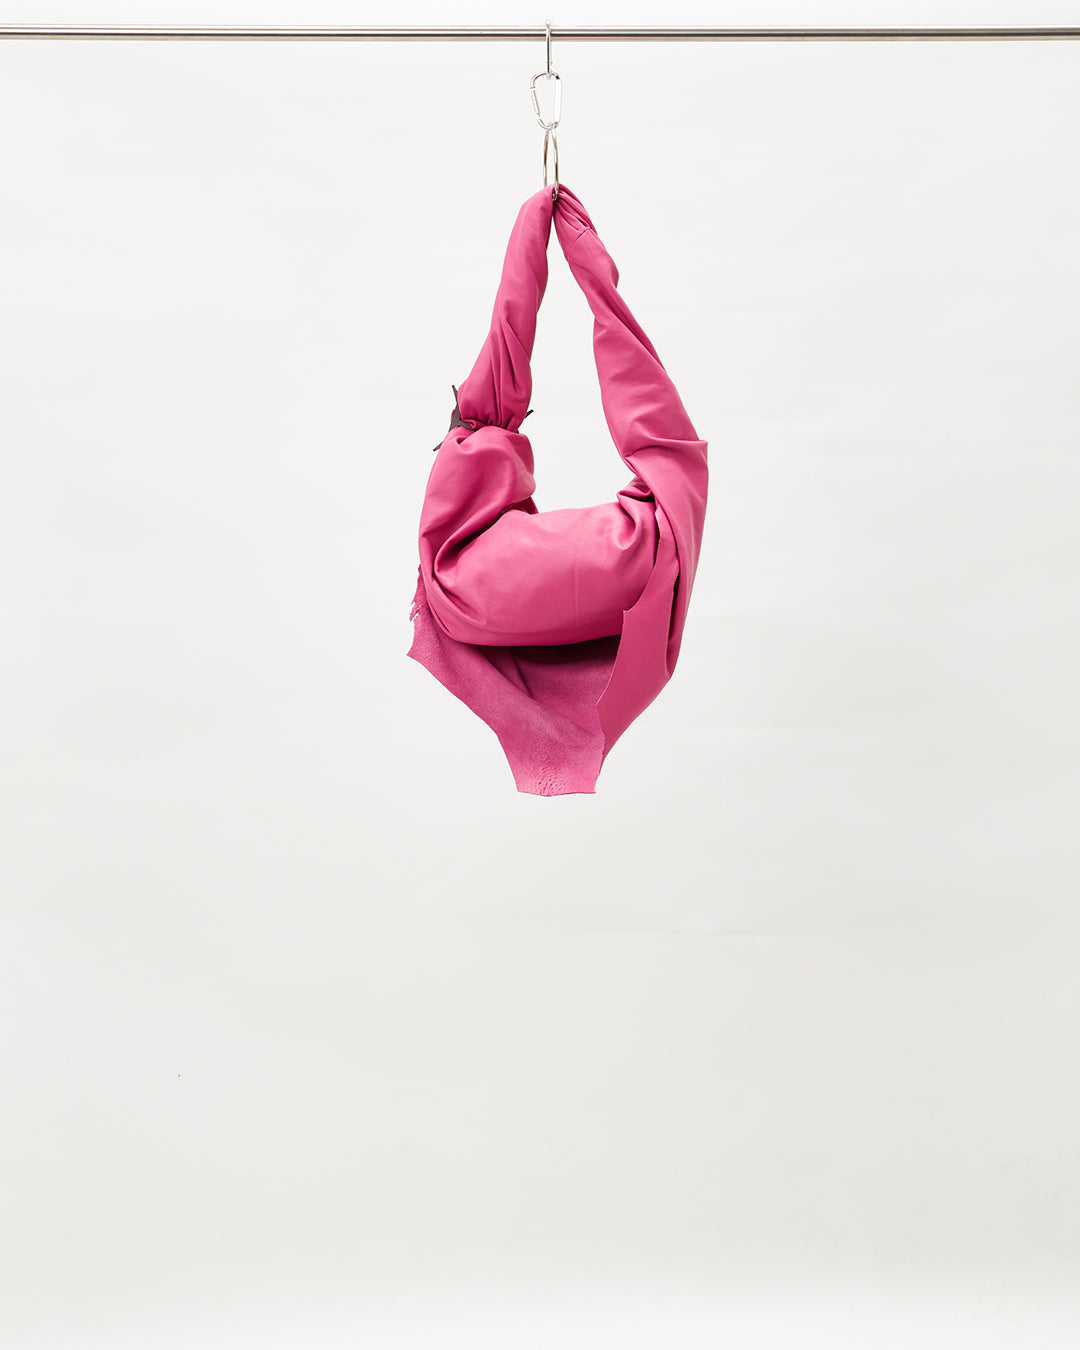 Karlaidlaw - Ems Bag Pink Small